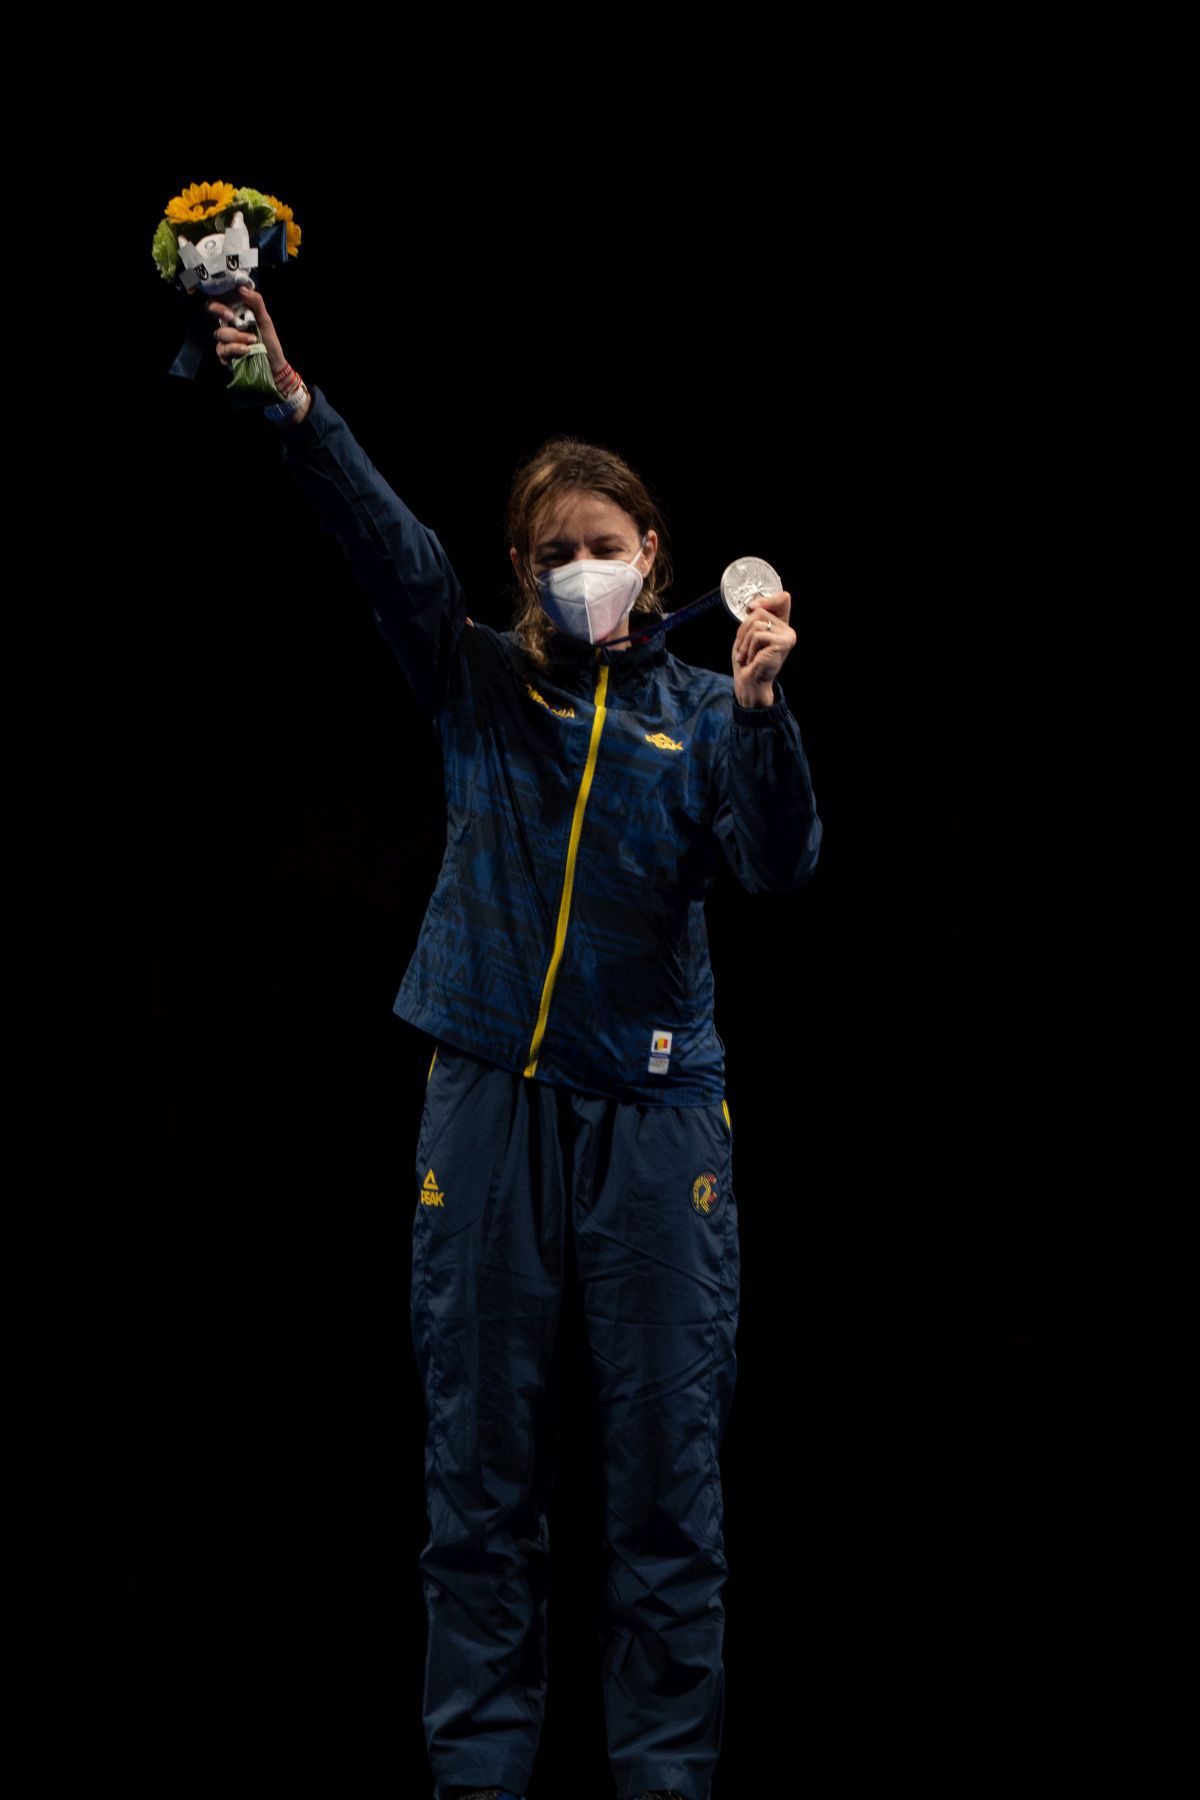 Finala de la spadă la Jocurile Olimpice: Ana Maria Popescu - Sun Yiwen 10-11 + medalia de argint